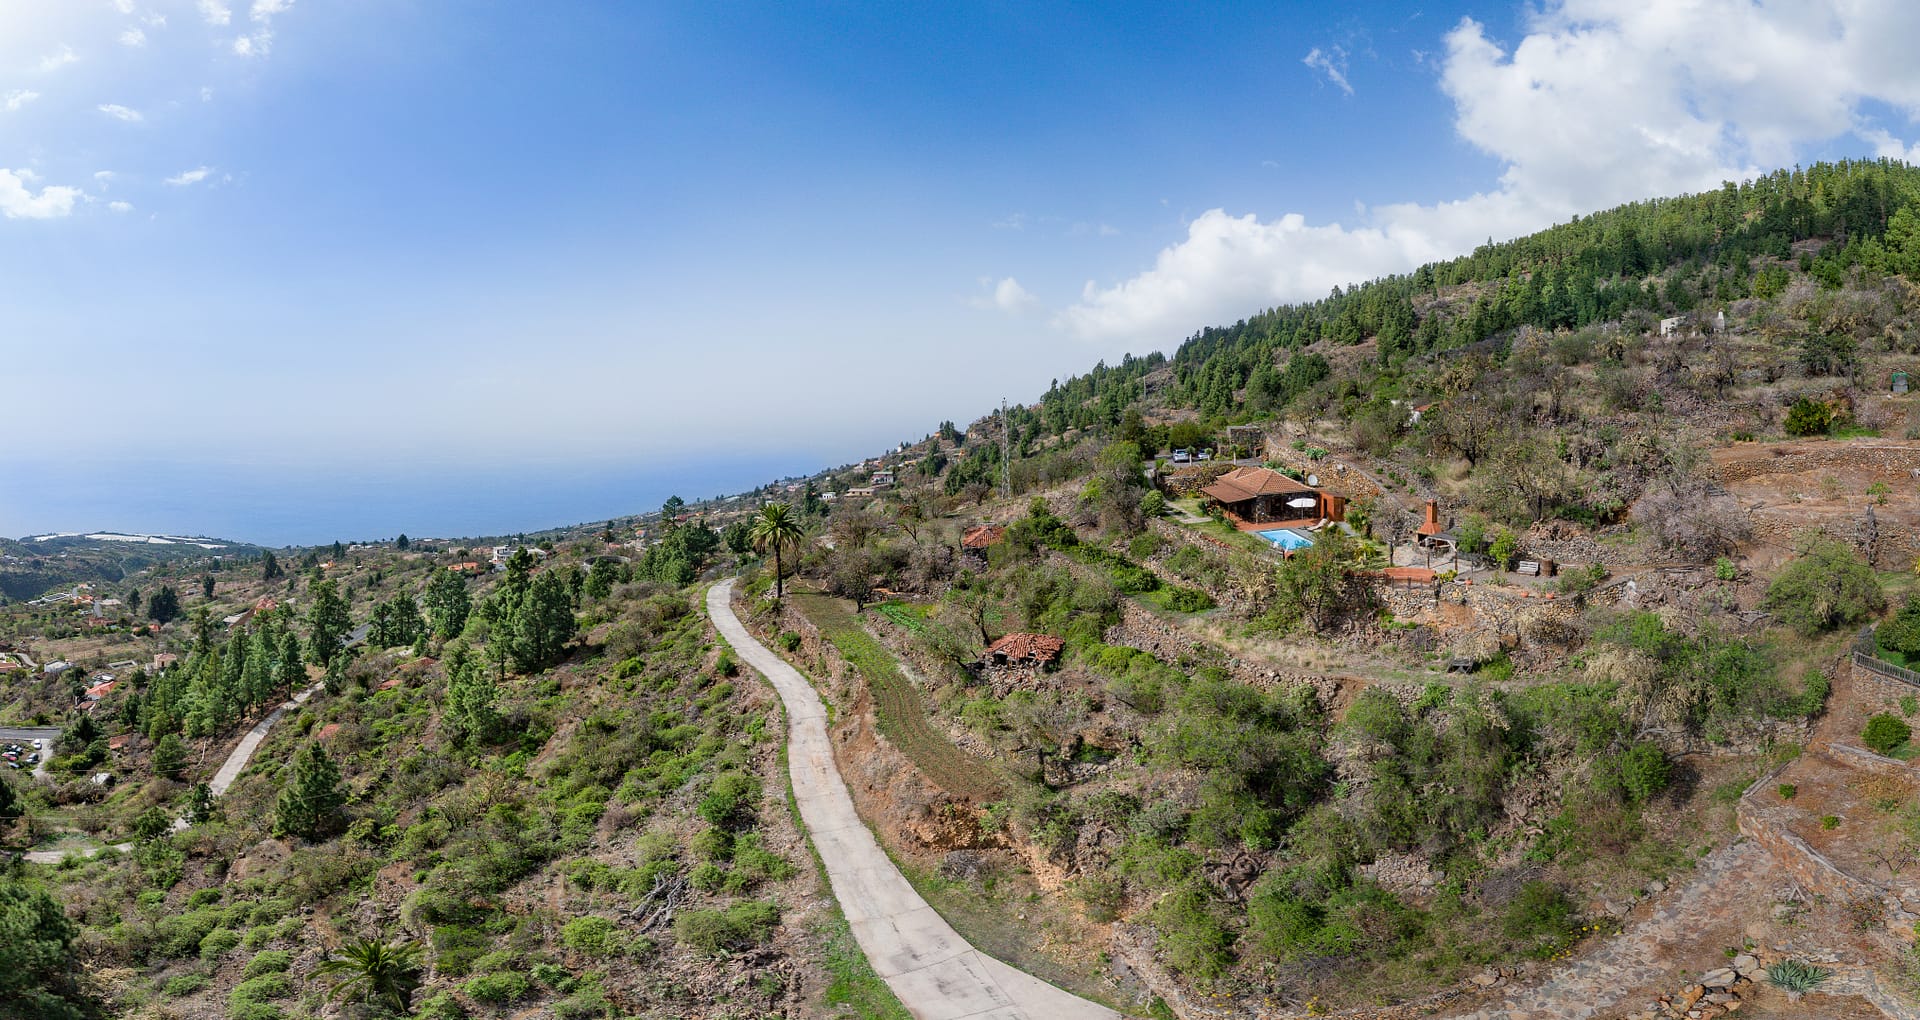 Fotografía para promociones inmobiliarias con drones en Canarias